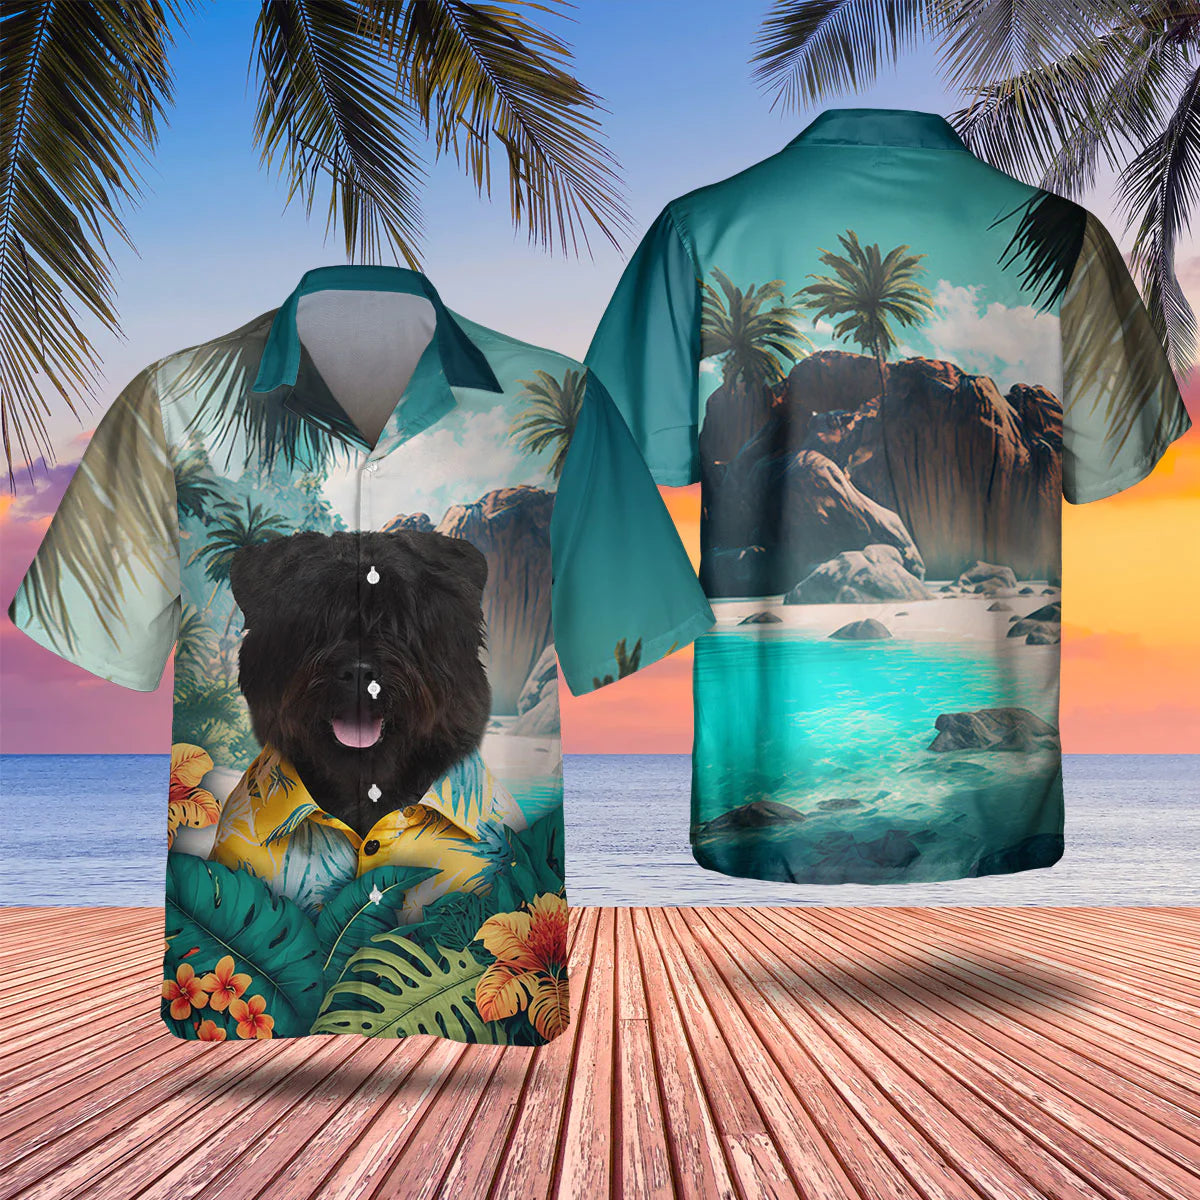 Bouvier - 3D Tropical Hawaiian Shirt